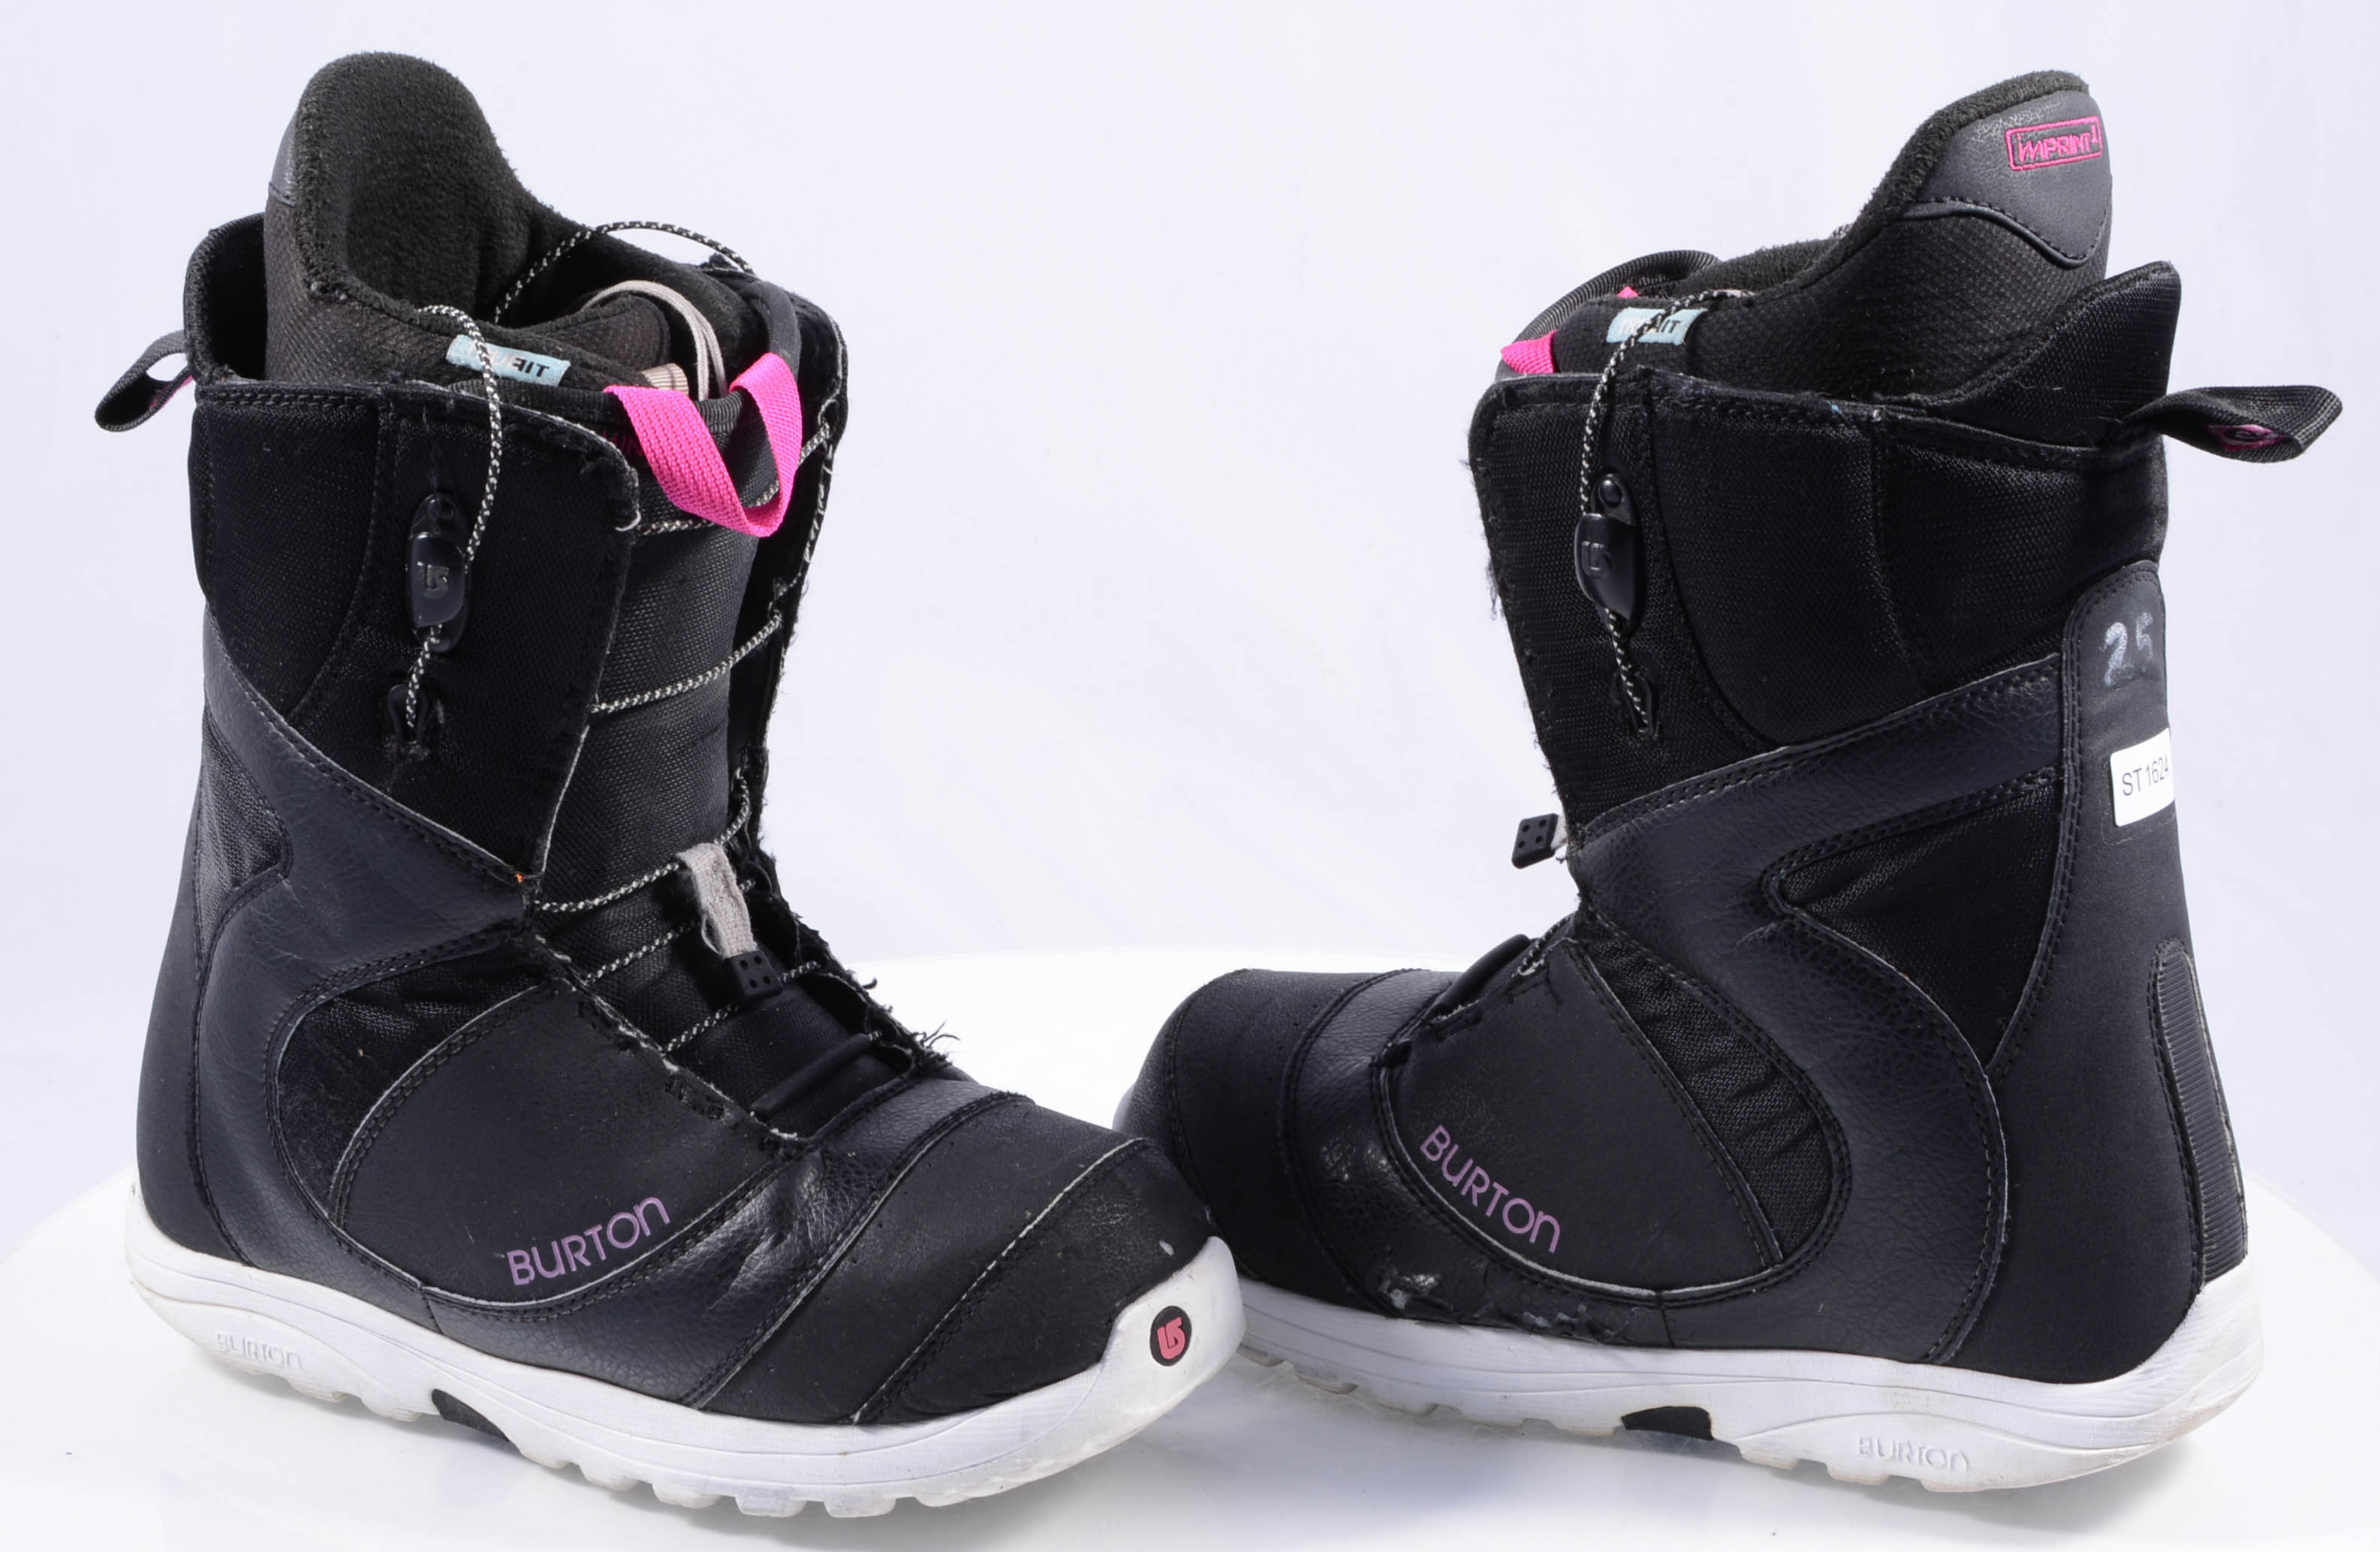 test Jaarlijks Suri snowboard schoenen BURTON WOMENS MINT, true fit, lower zone,  black/pink/white - Mardosport.nl